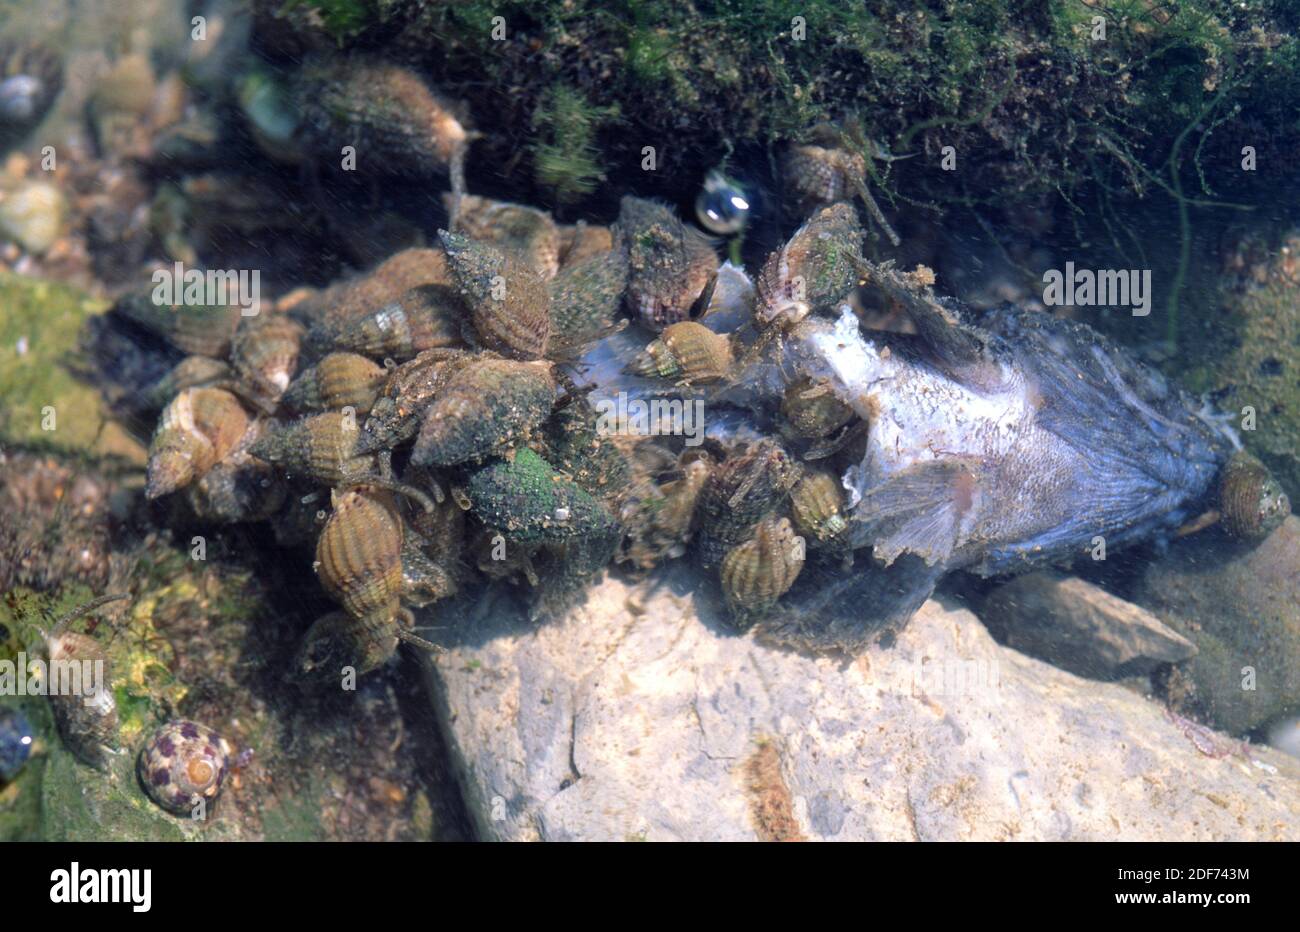 Hinia incrassata o Tritia incrassata es un caracol marino carnívoro. Esta foto fue tomada en la costa de San Juan de Luz, Francia. Foto de stock